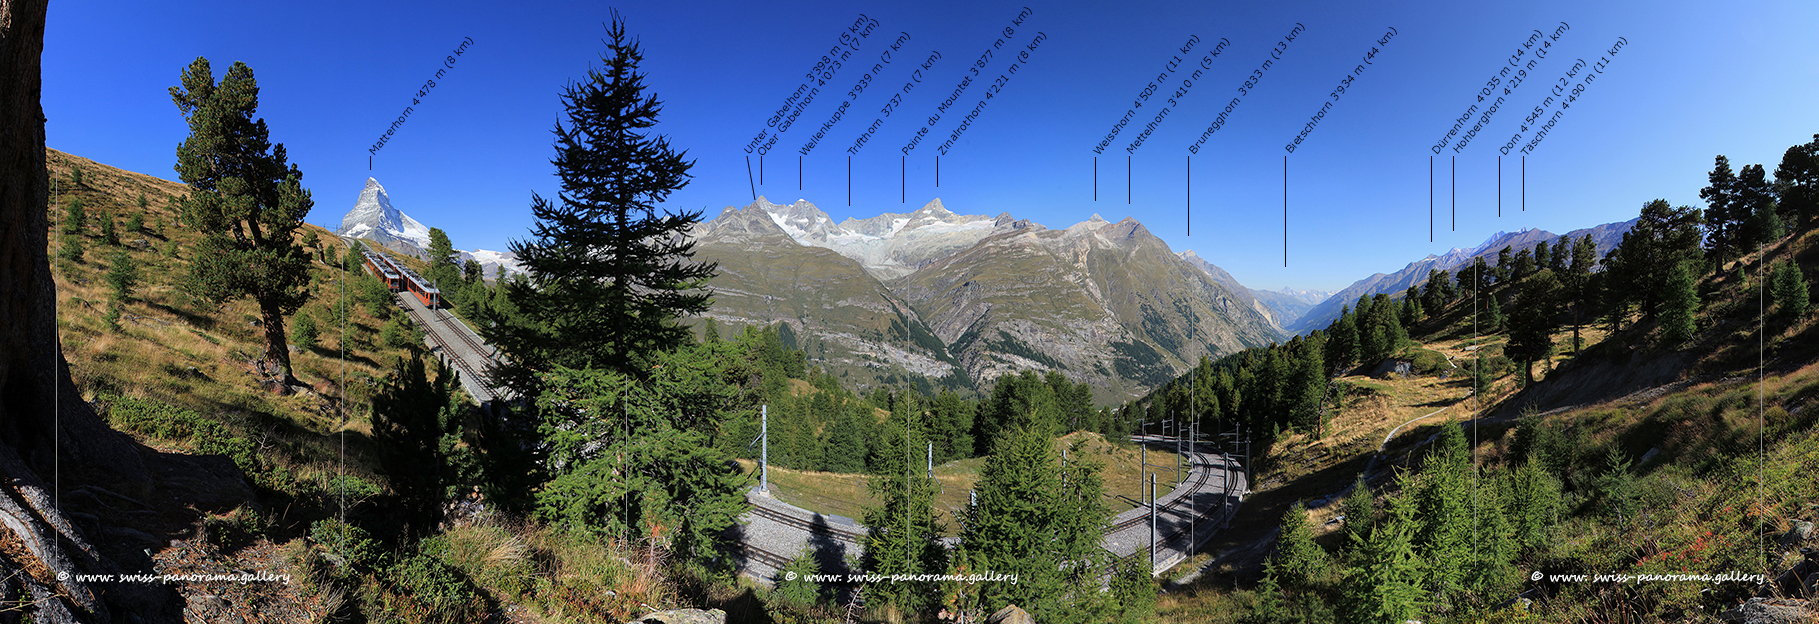 Zermatt panorama Riffelalp Gornergrat Railway